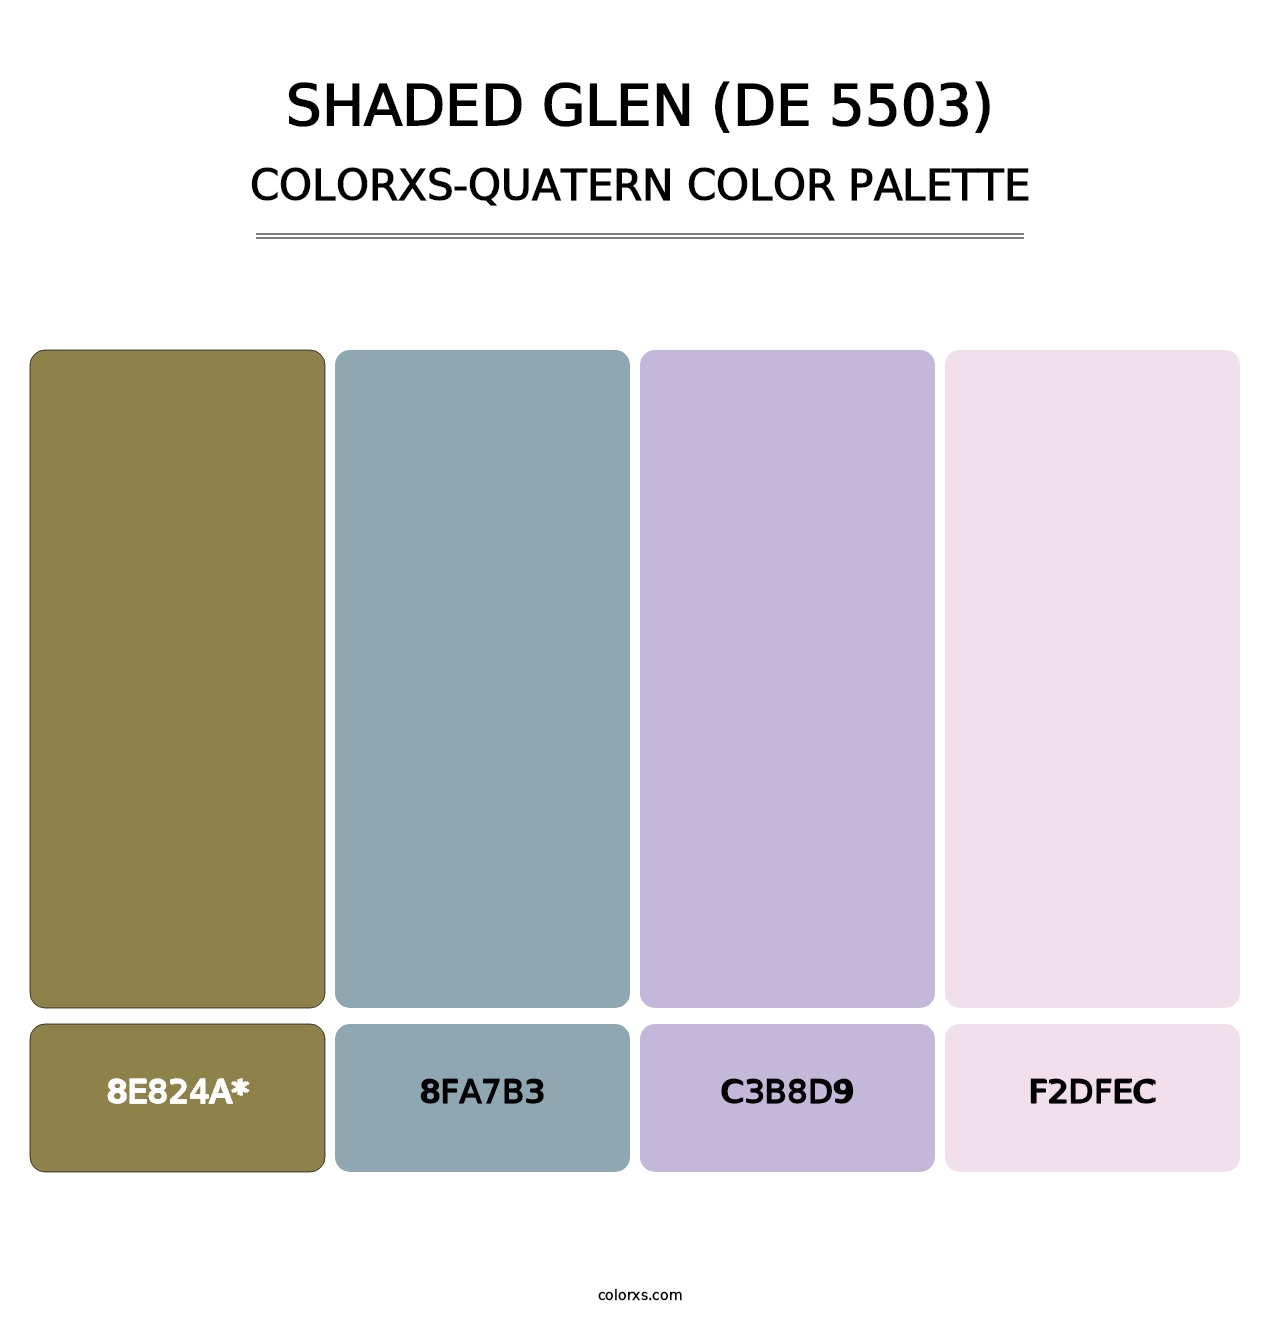 Shaded Glen (DE 5503) - Colorxs Quatern Palette